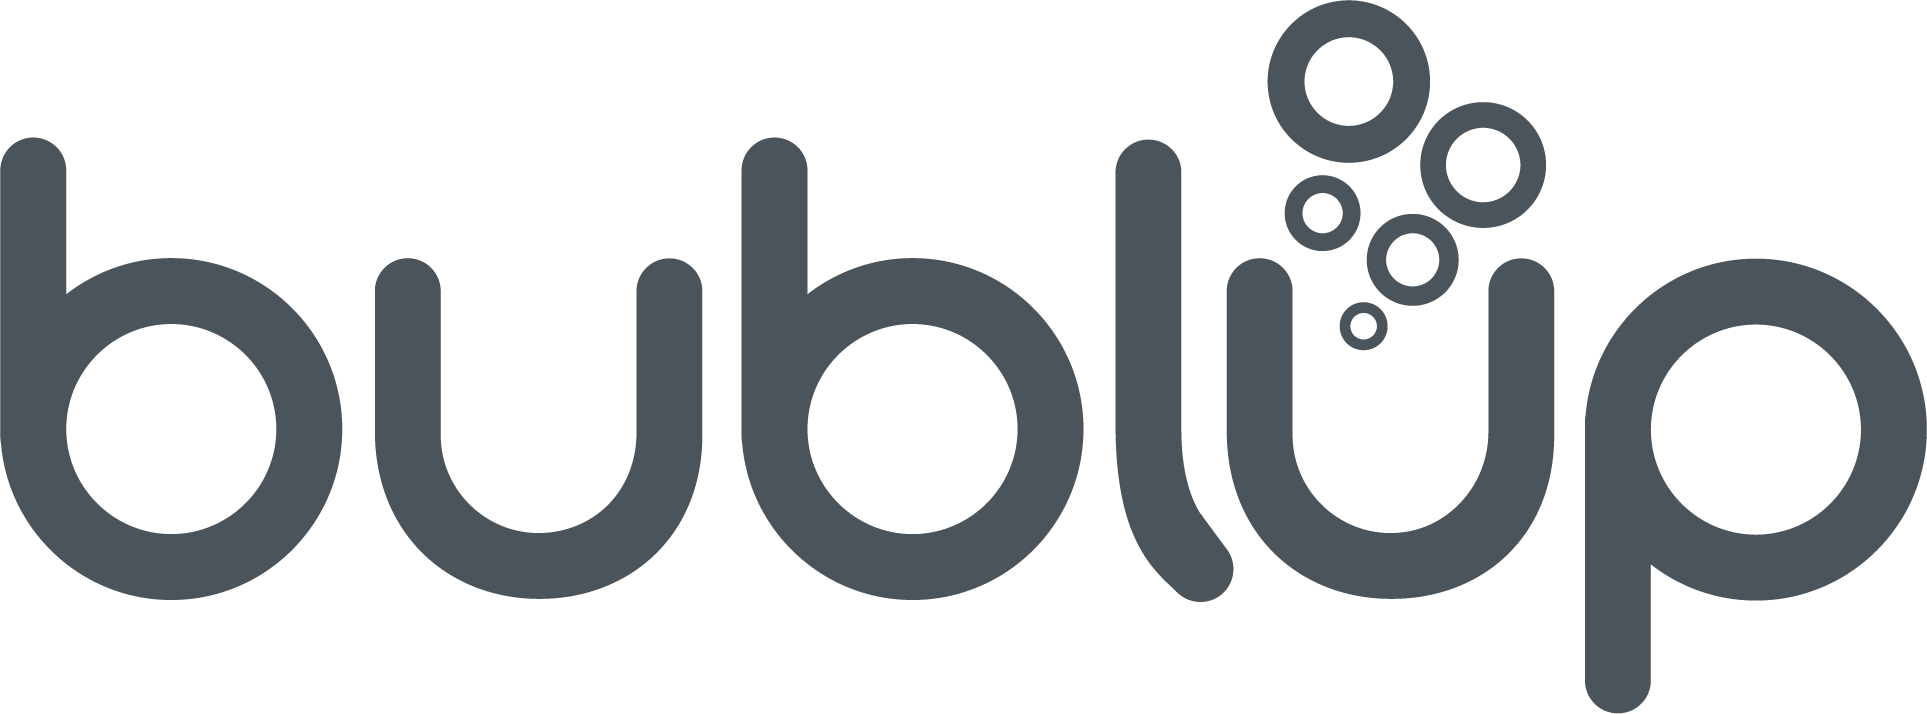 bublup-logo-bk.png